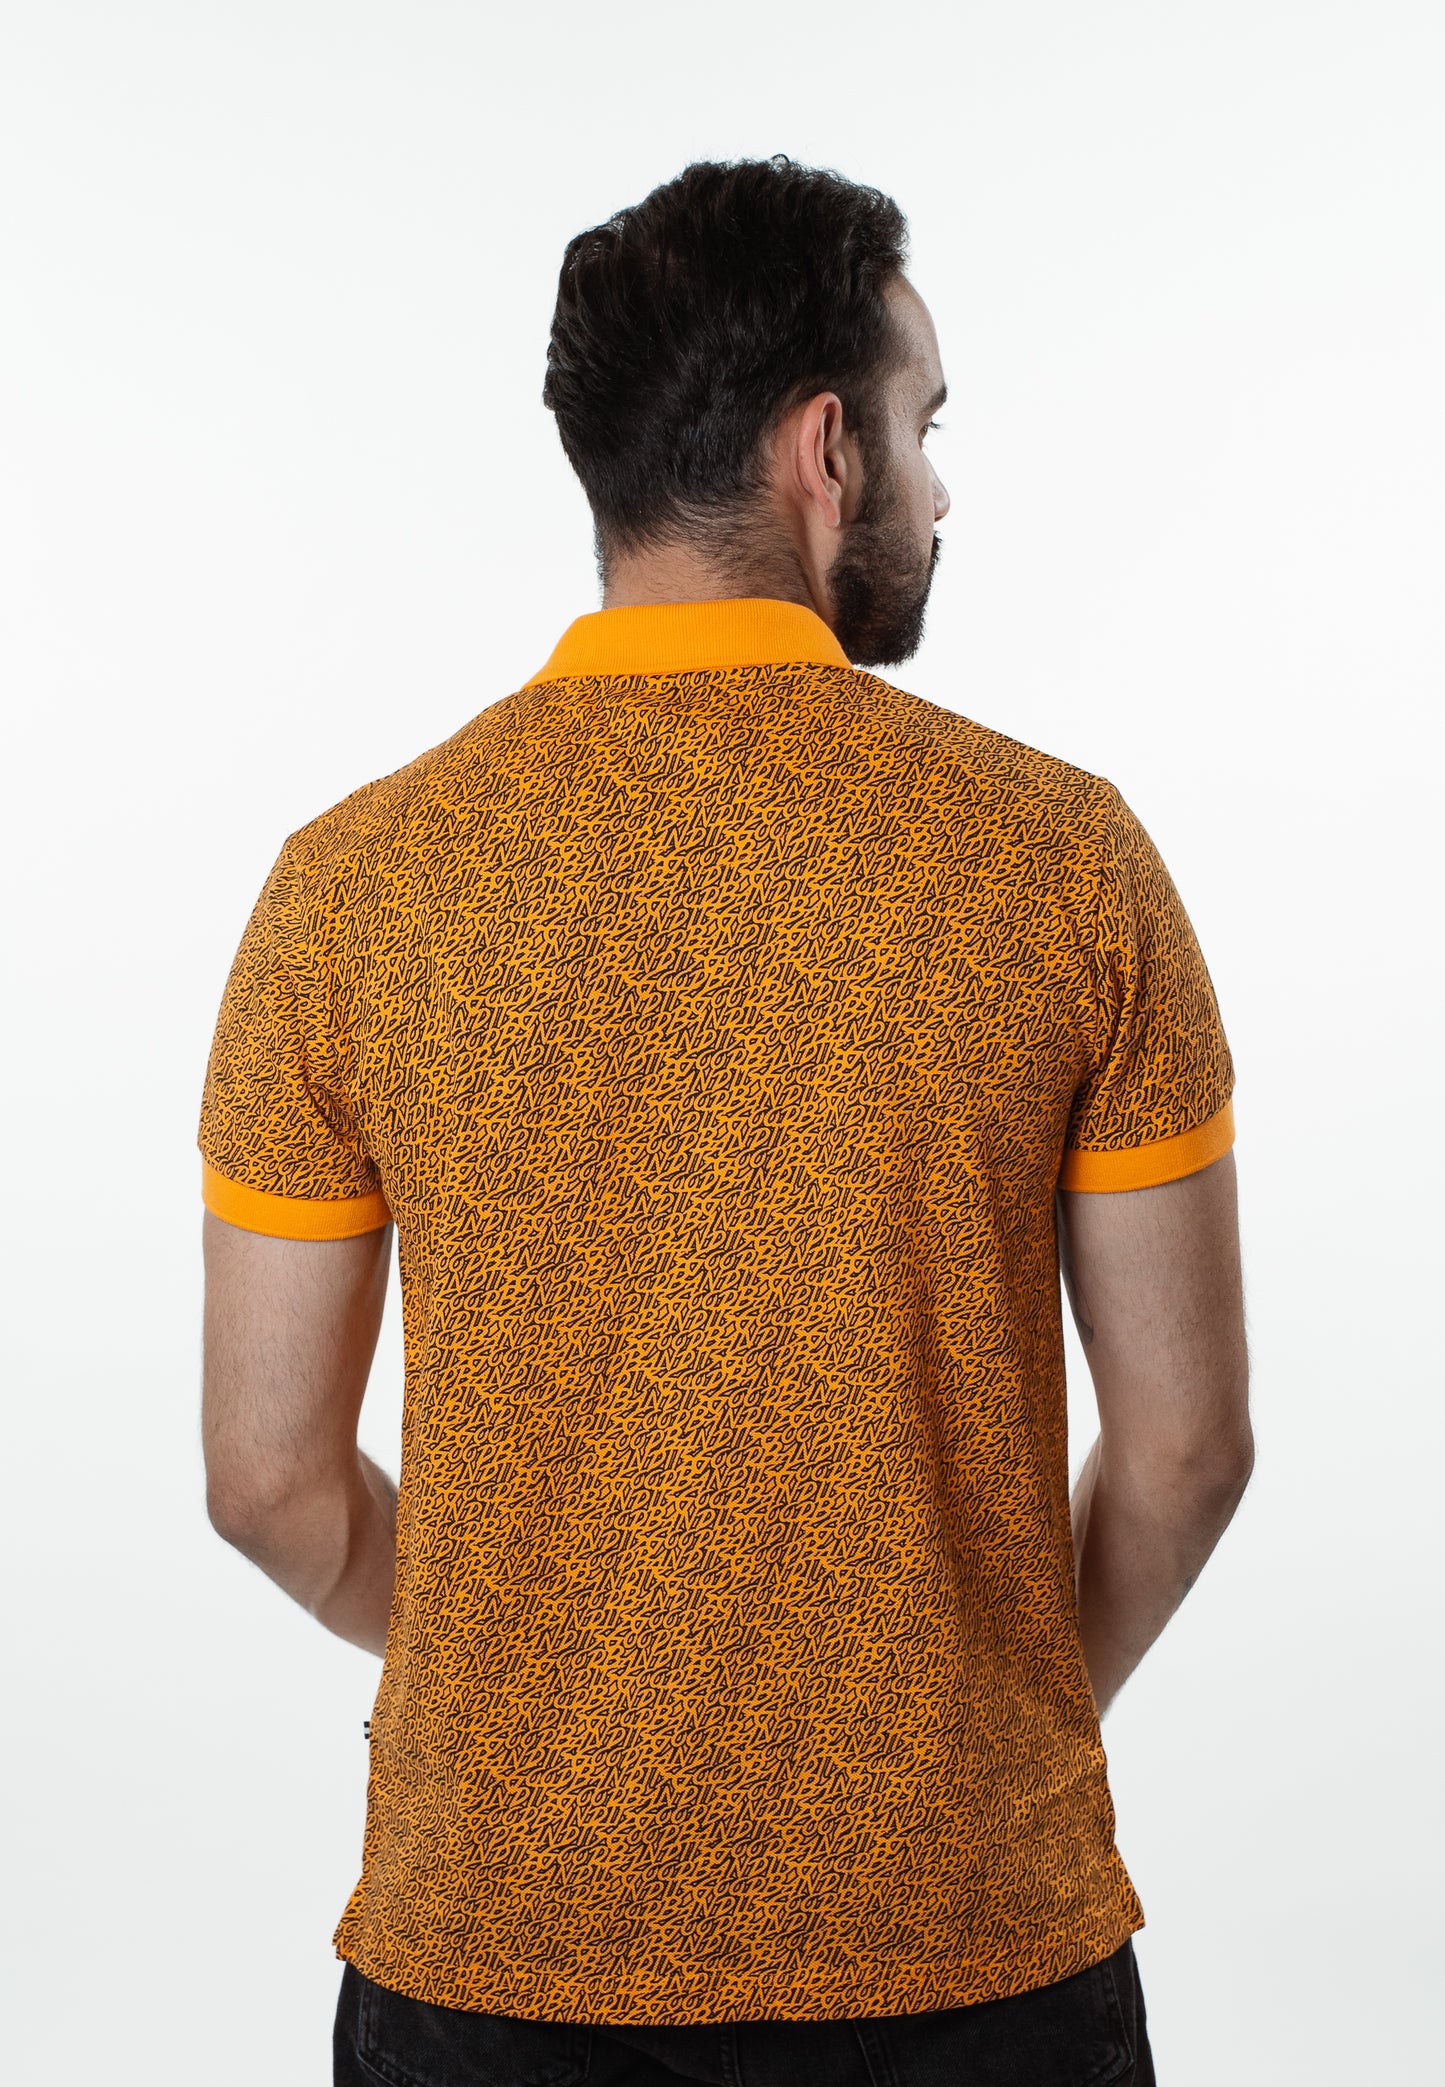 Iconic - Organic Polo-shirt - Orange